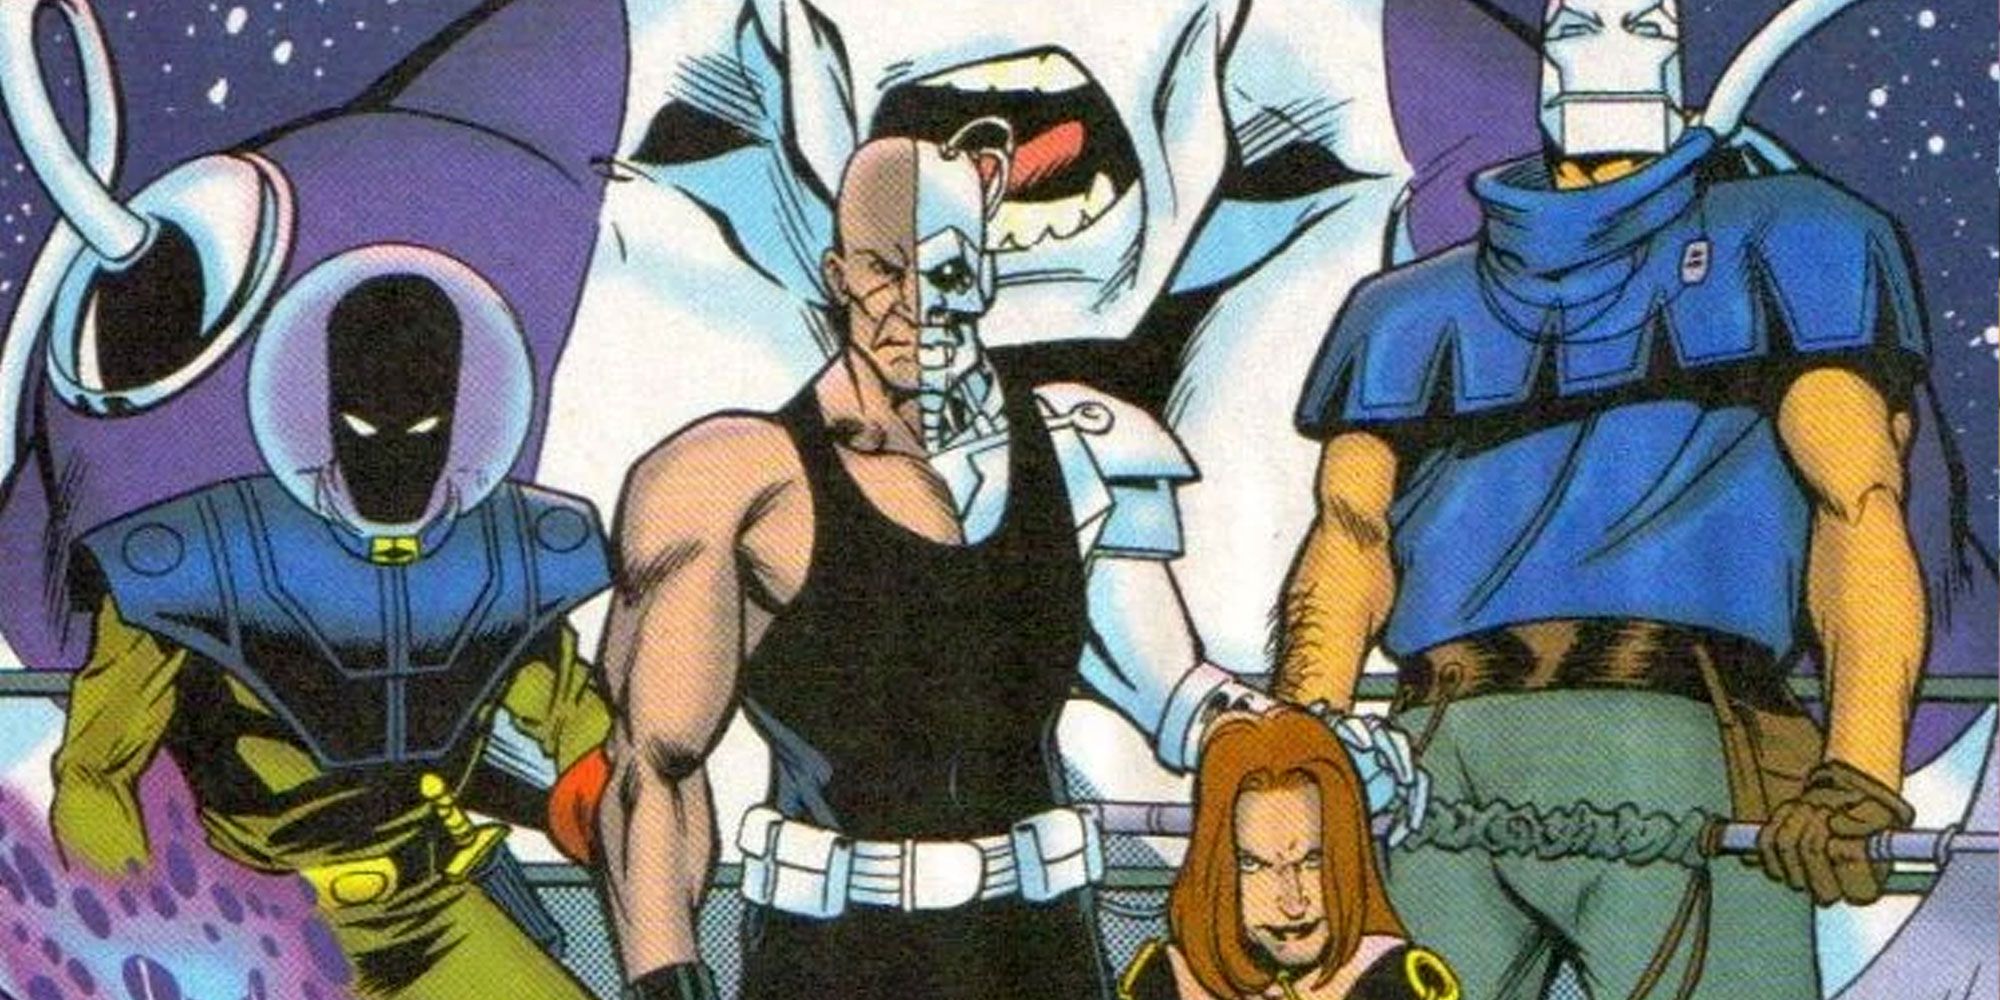 Os Cinco Fatais aparecem nos quadrinhos da DC.